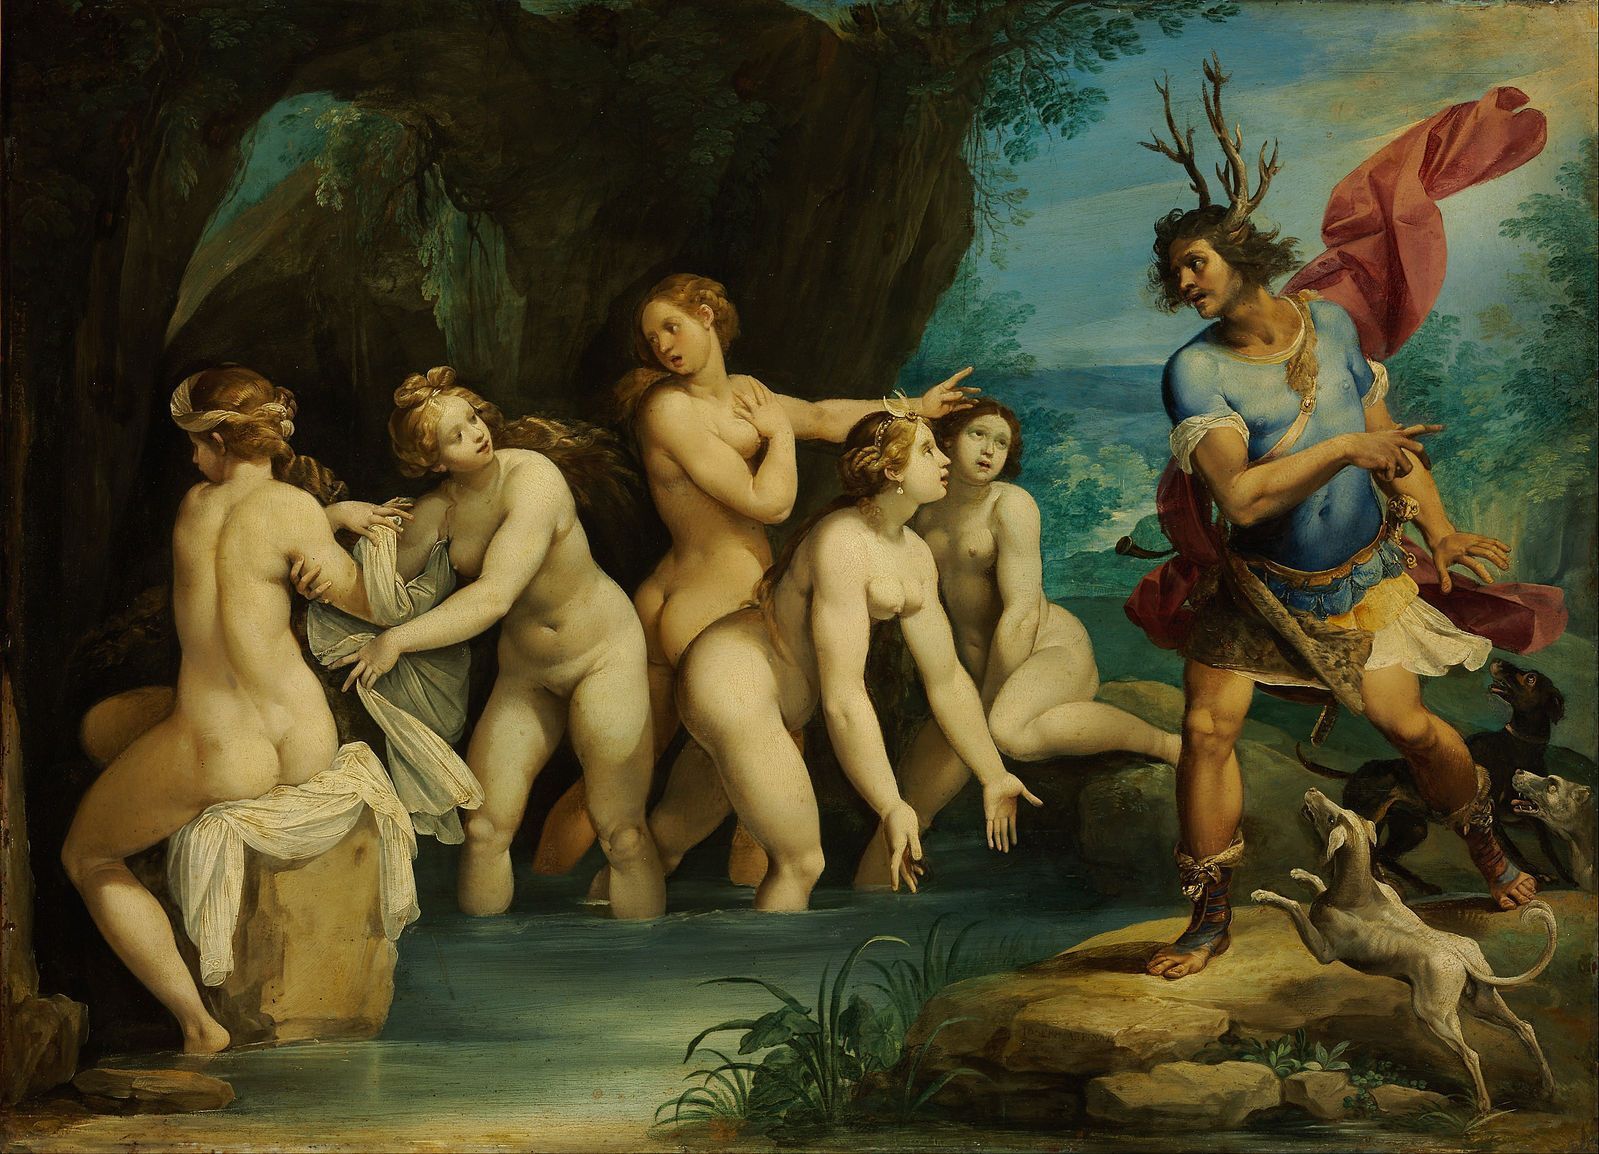  У Франції спалахнув скандал навколо вчительки, яка показала учням картину XVII століття із зображенням оголених жінок